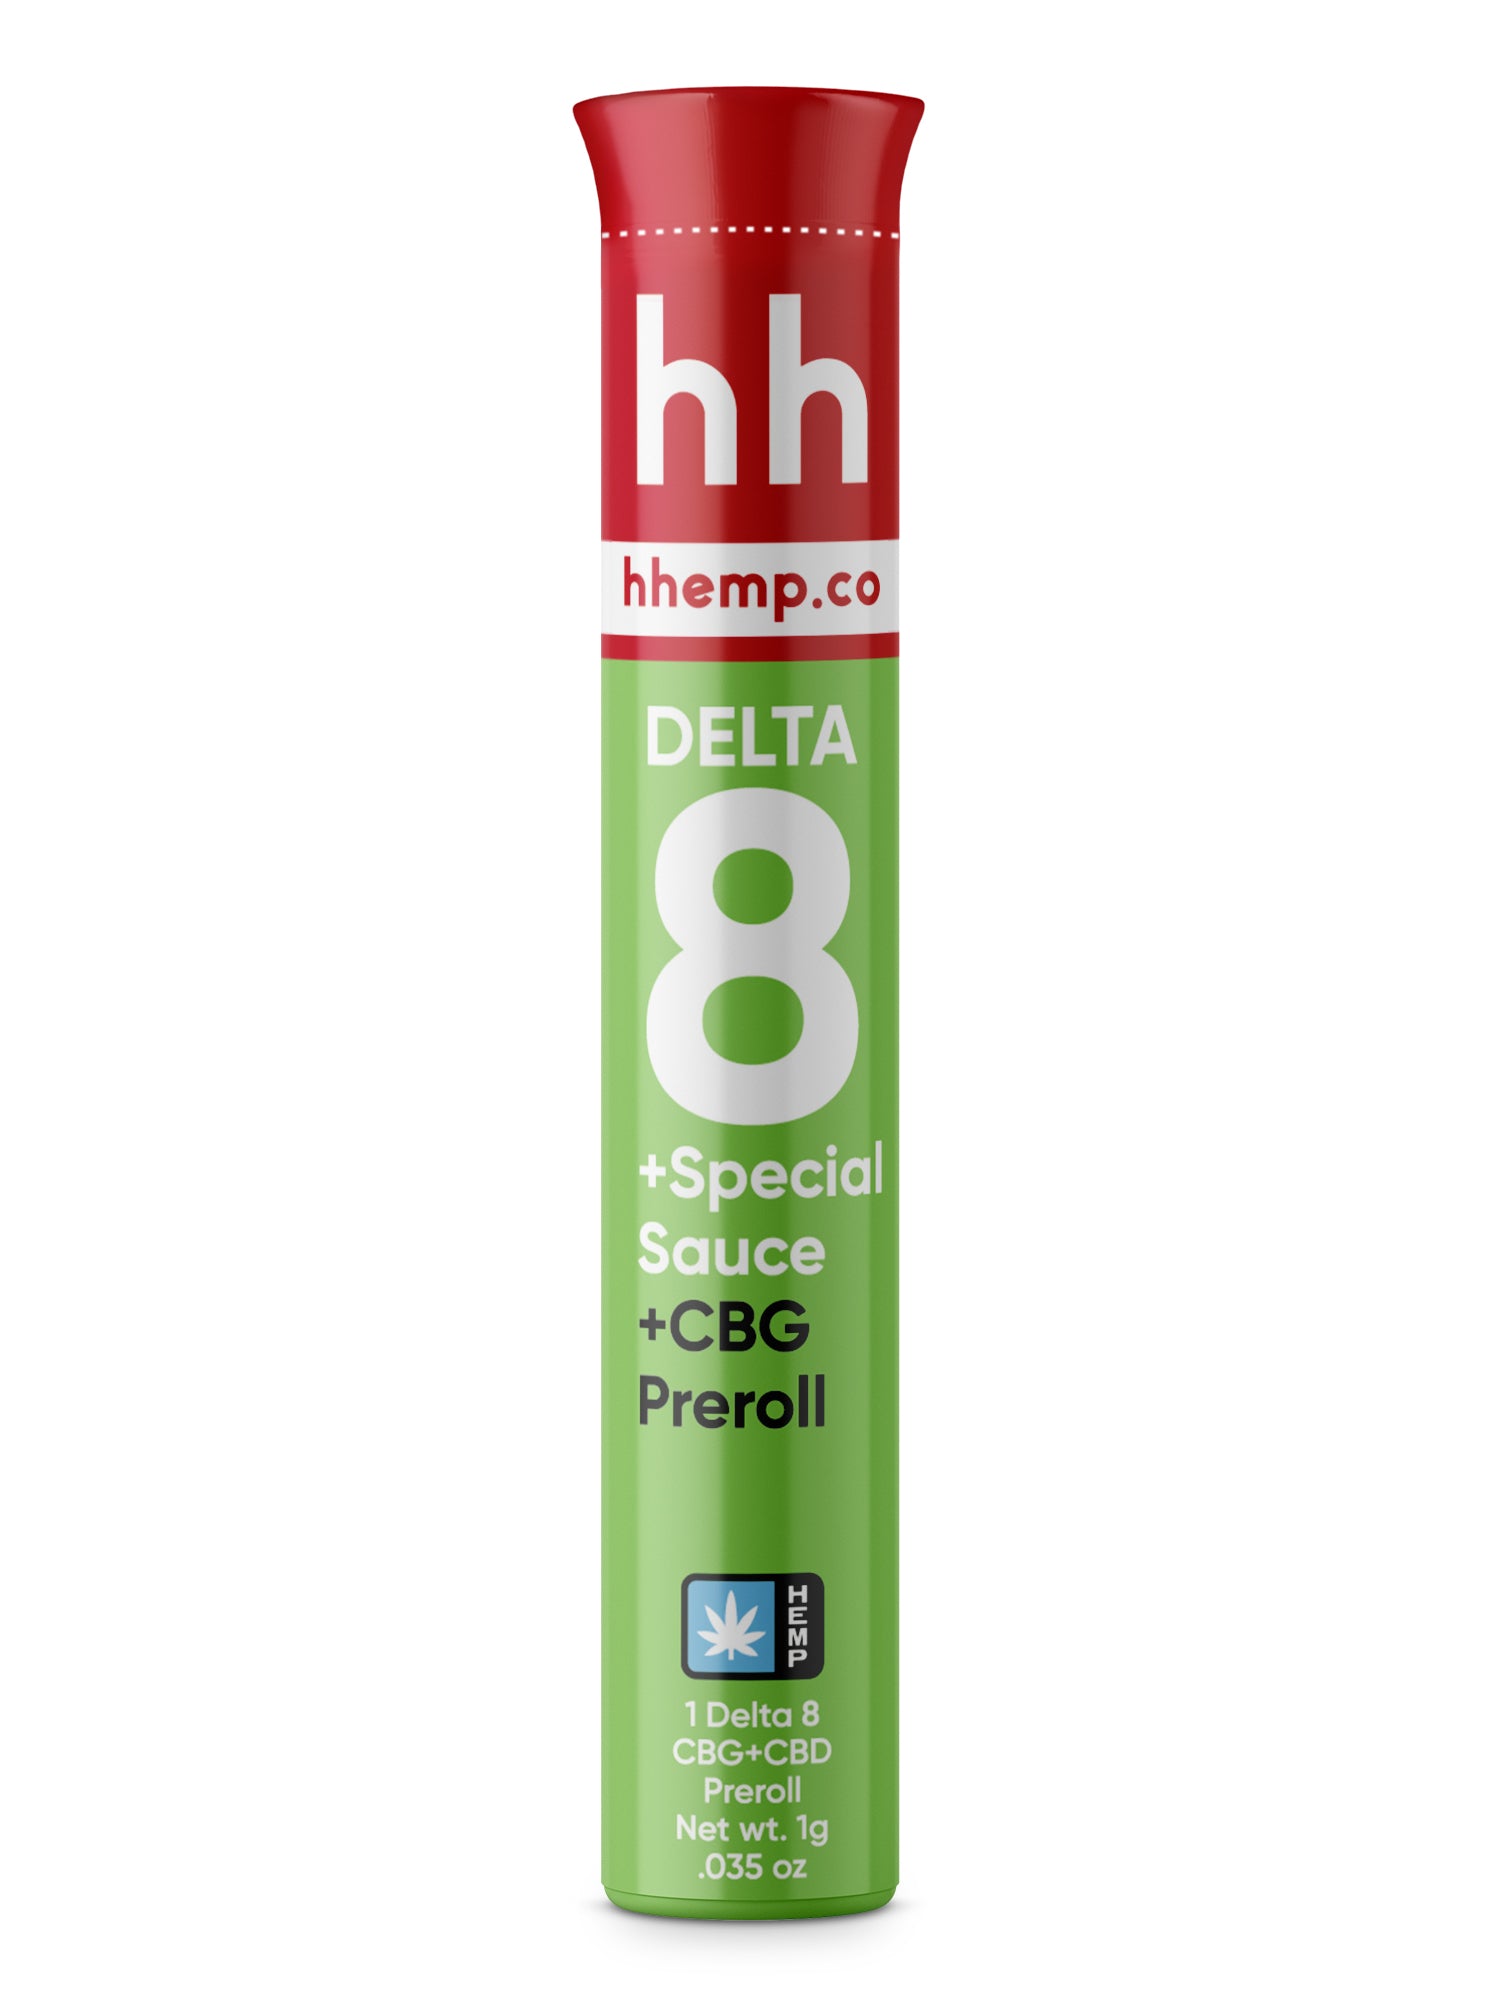 hhemp.co Delta 8 Infused Preroll - CBG + Special Sauce